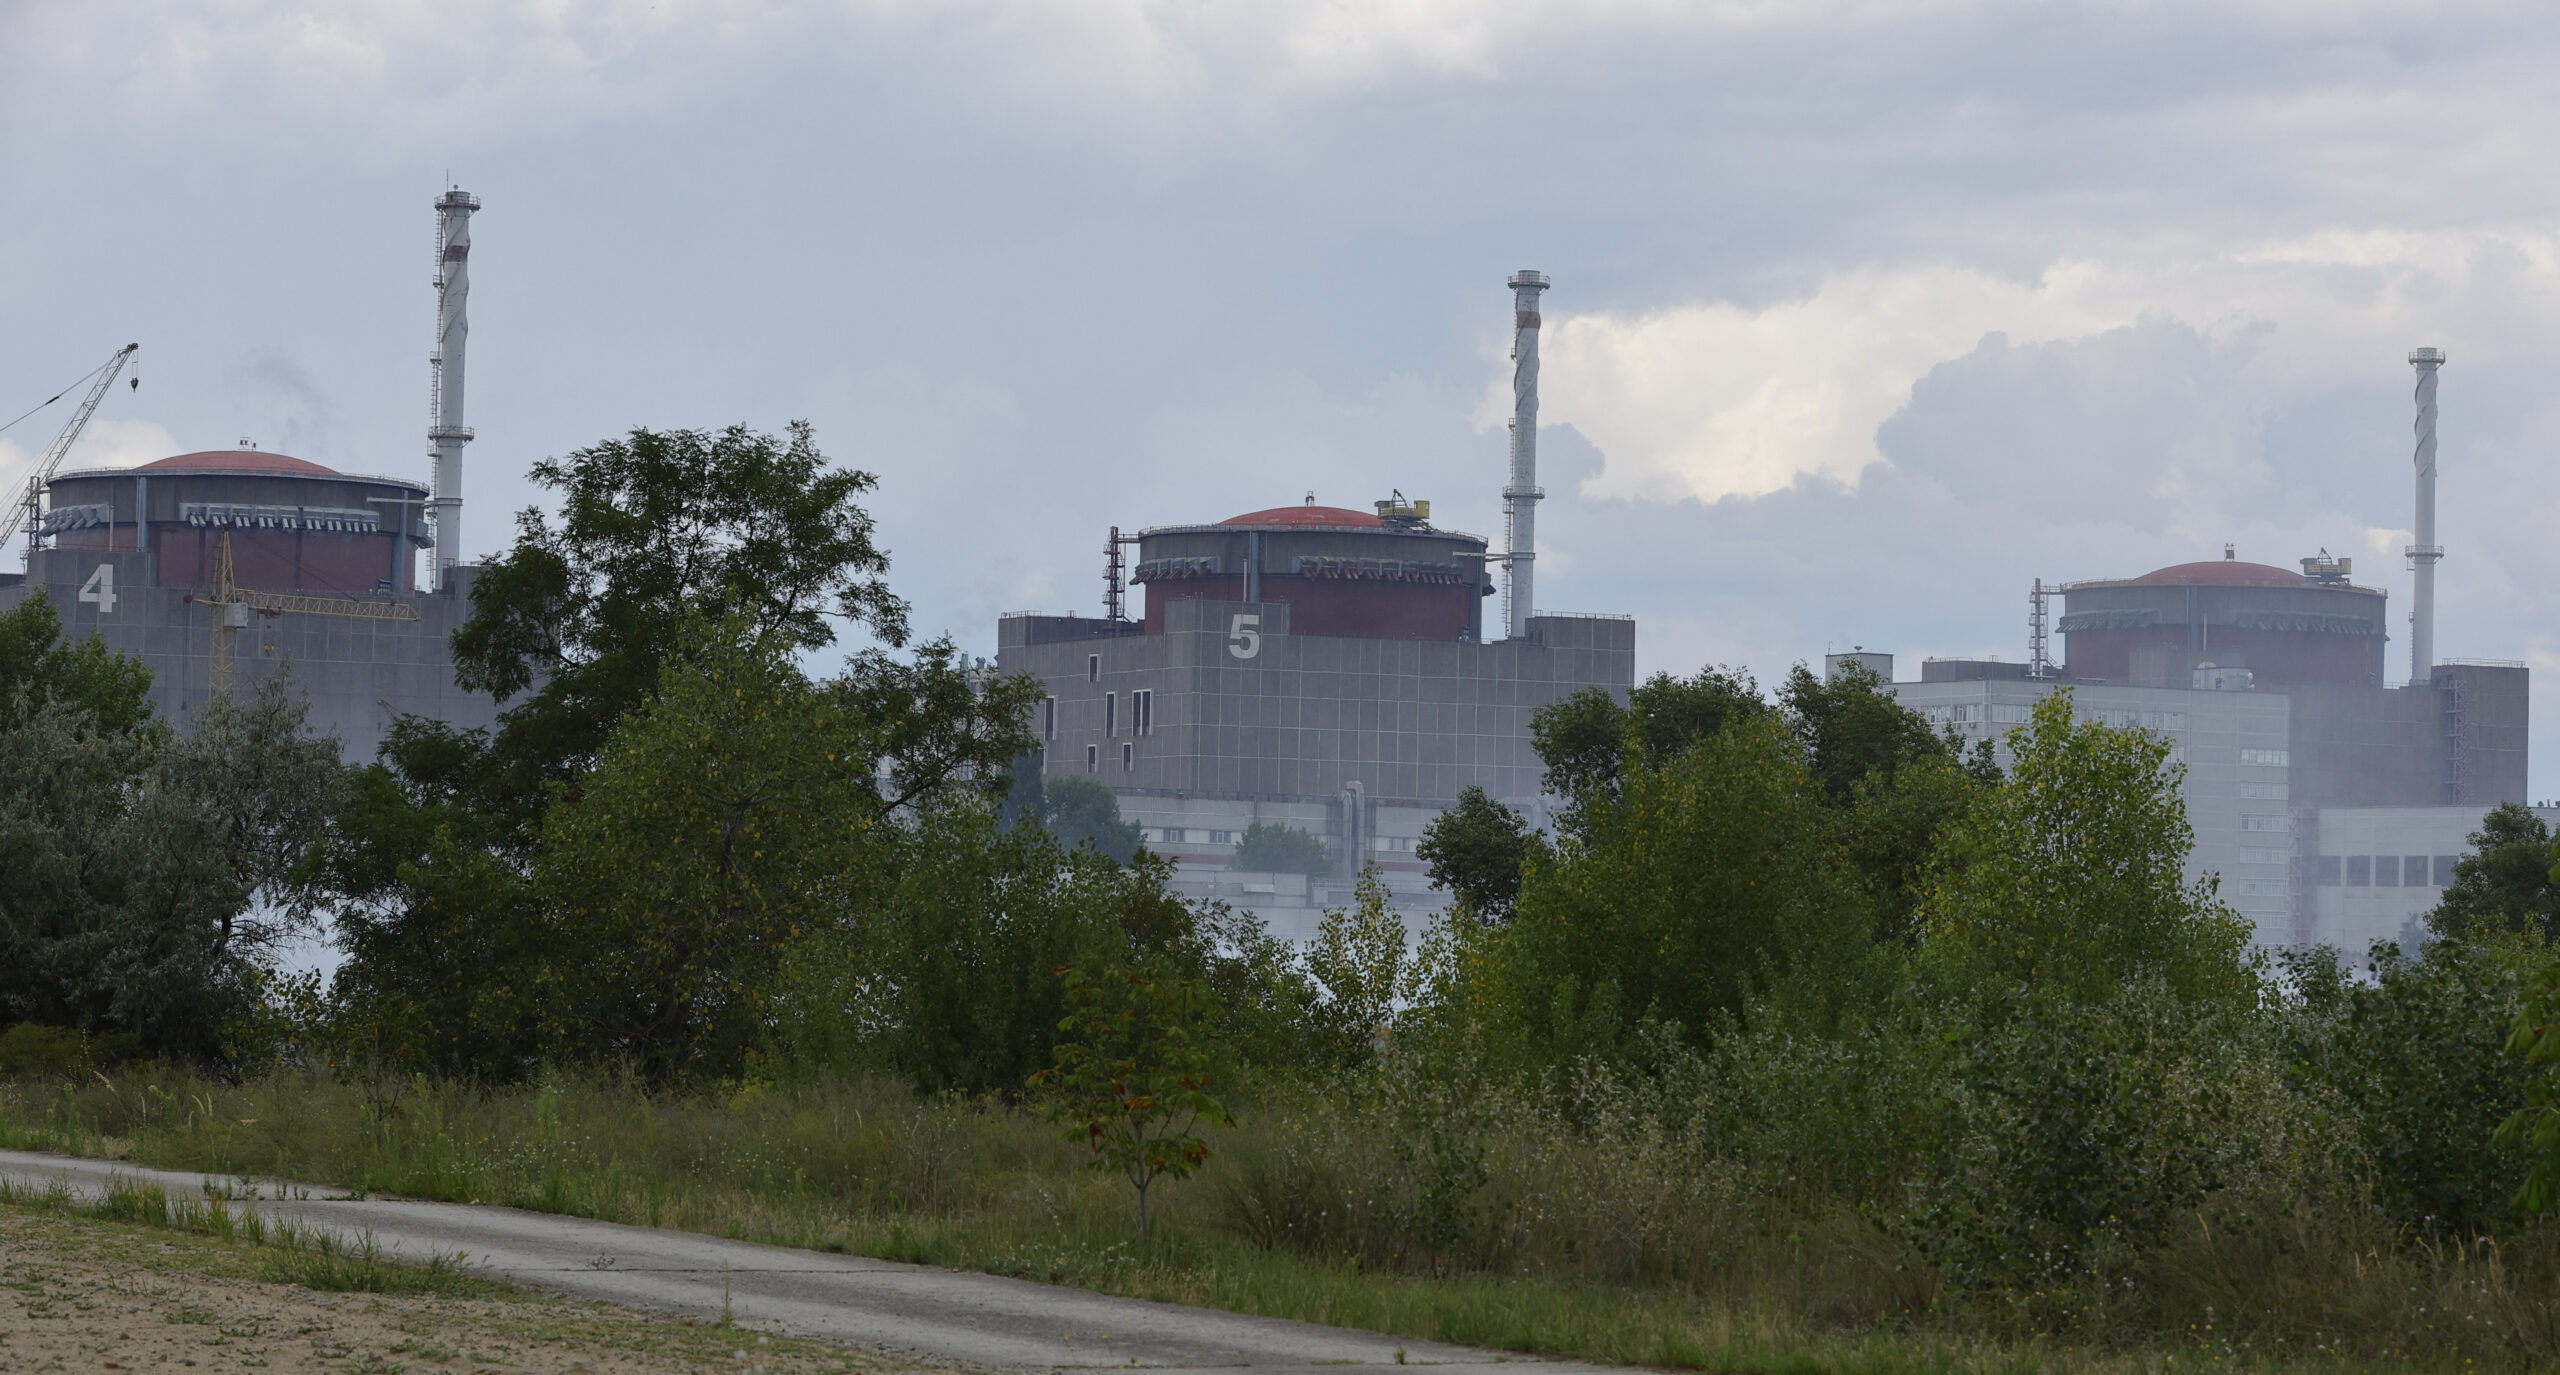 ยูเครนตั้งศูนย์รับมือสถานการณ์โรงไฟฟ้านิวเคลียร์ 'ซาปอริซเซีย'